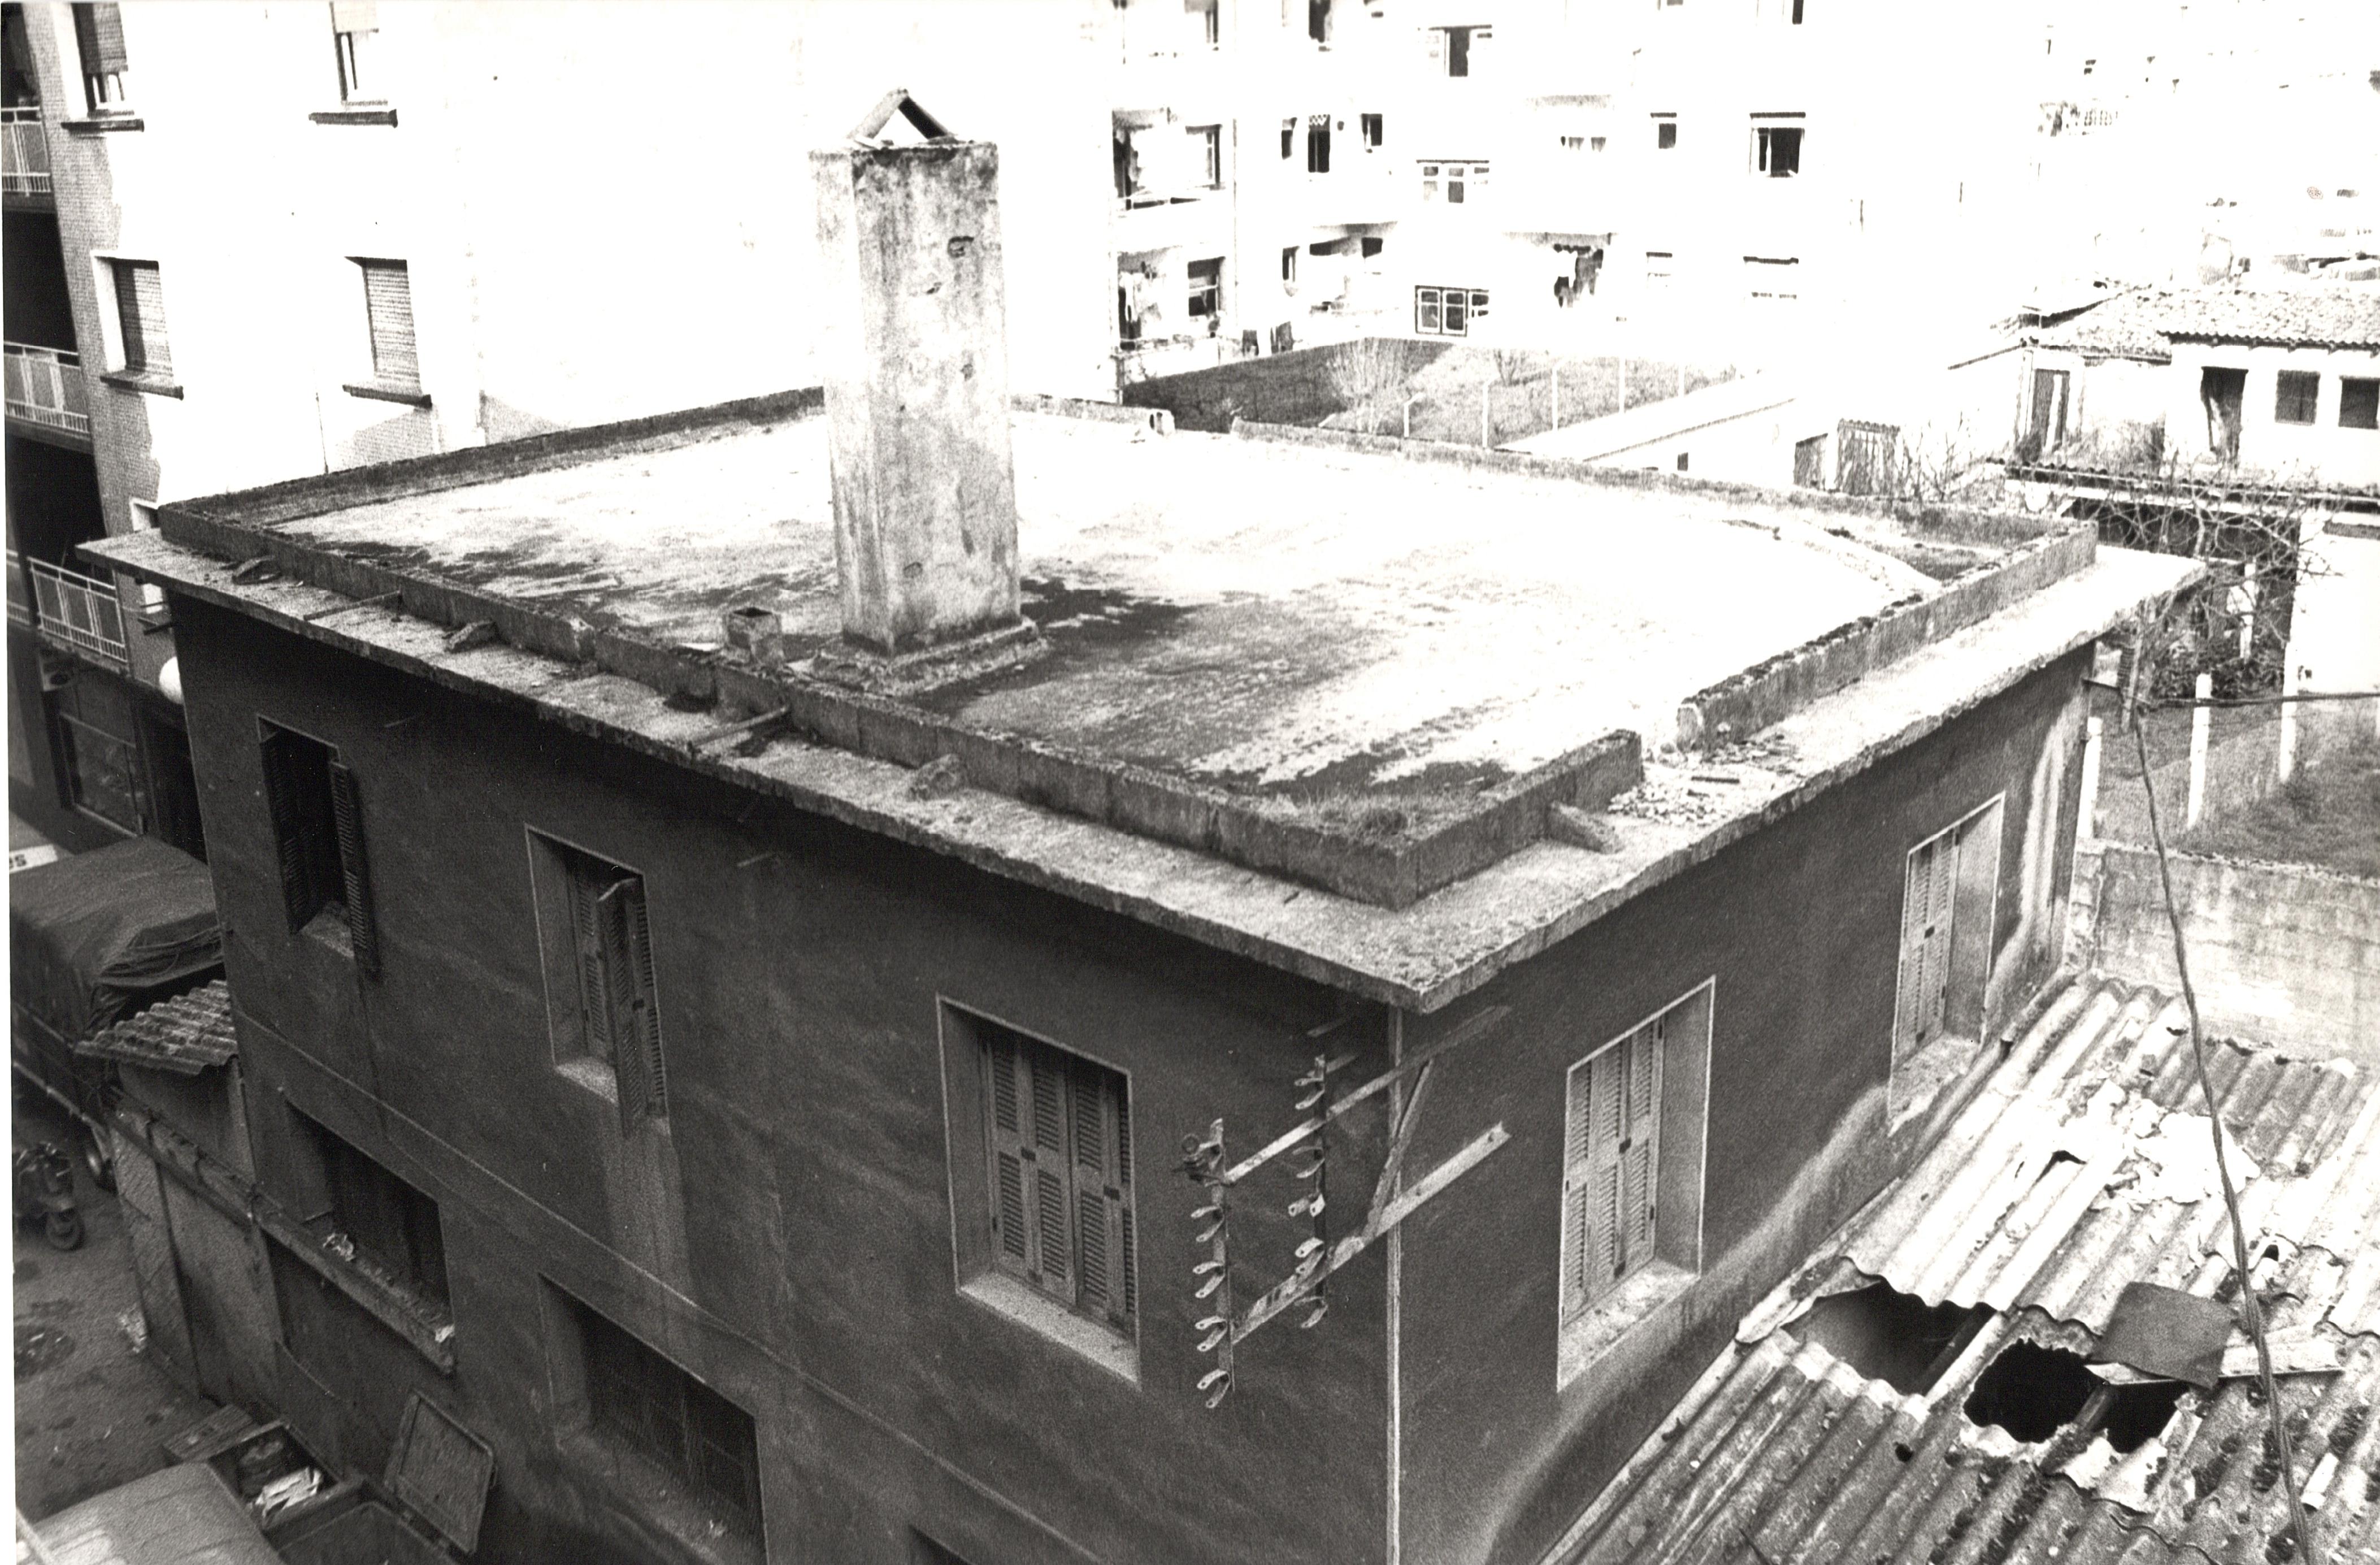 Se ve un edificio con una chimenea en el tejado, una chimenea de piedra. Cerca hay otros edificios pero que no se ven con nitidez por la calidad de la fotografía, Es una foto en blanco y negro. Hay varias ventana y el edificio tiene dos plantas. 